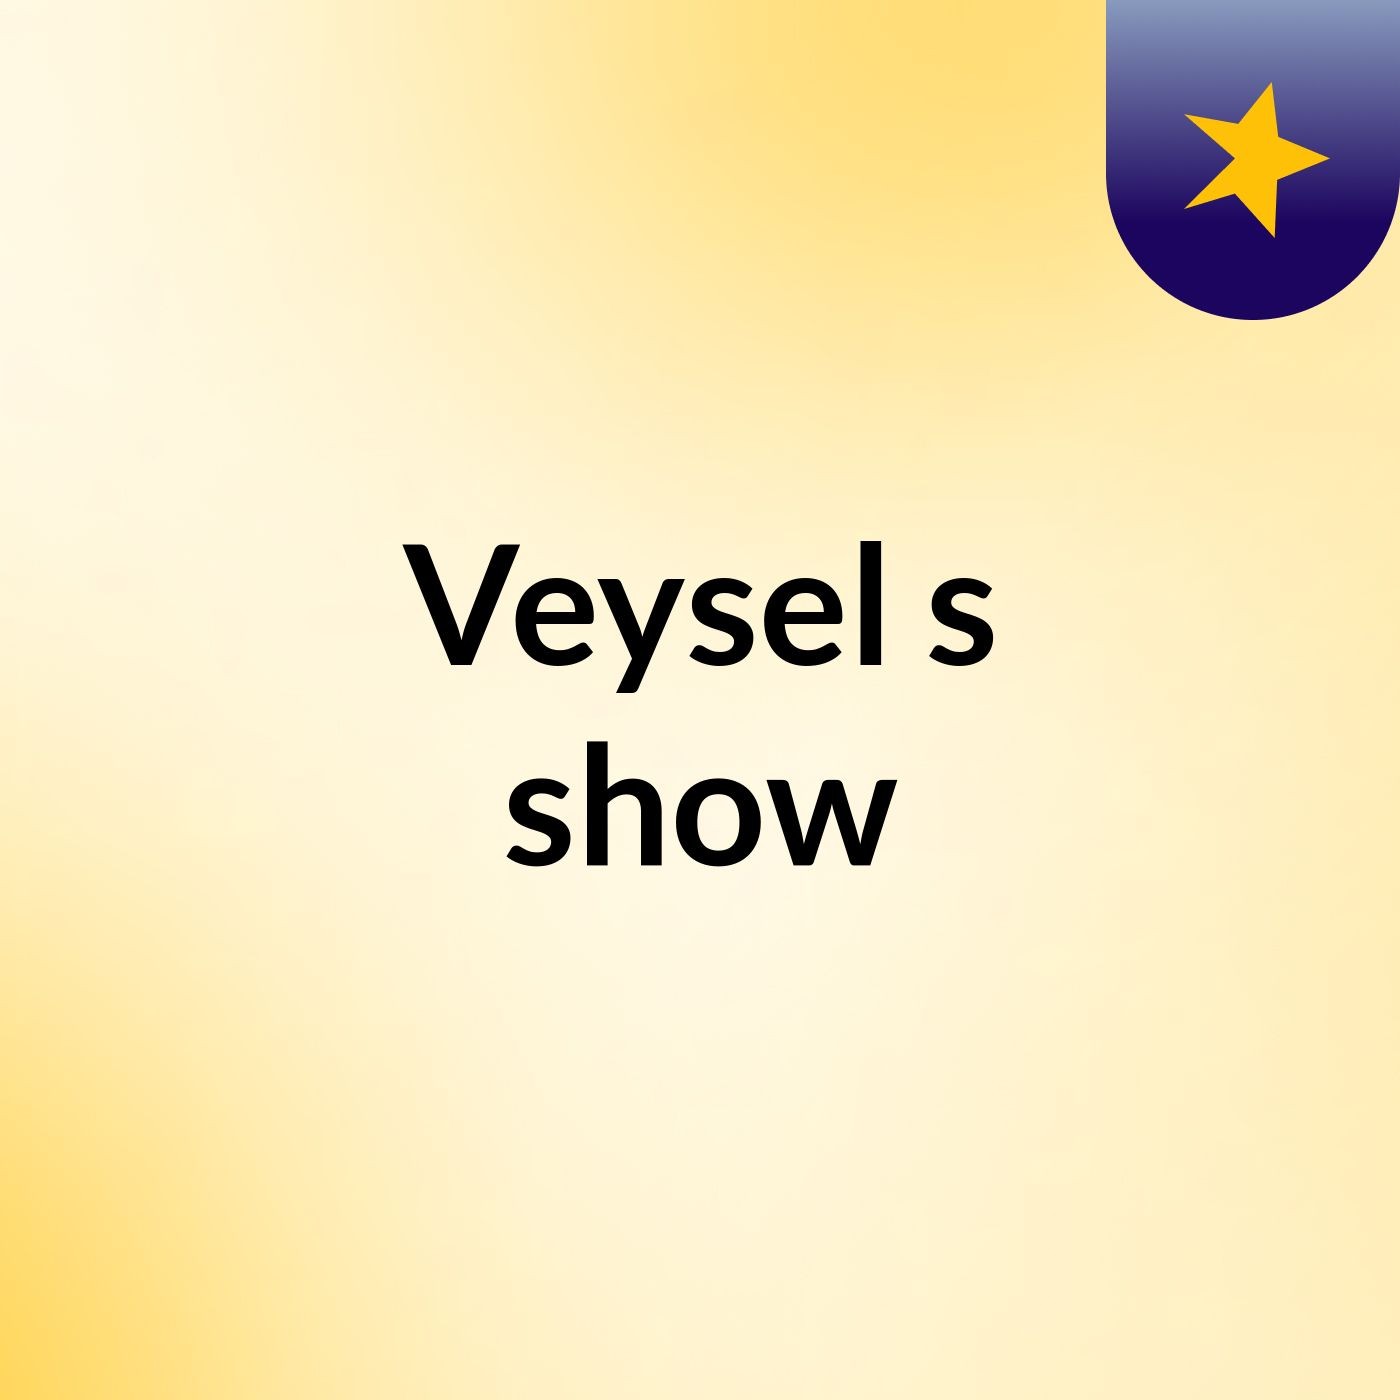 Veysel's show